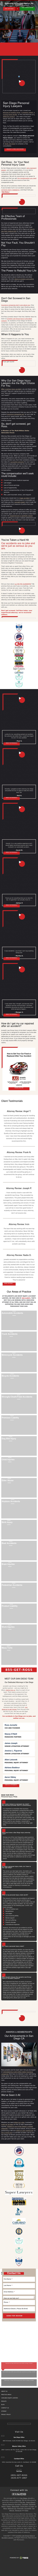 Jurewitz Law Group | Injury & Accident Lawyers - San Diego CA Lawyers